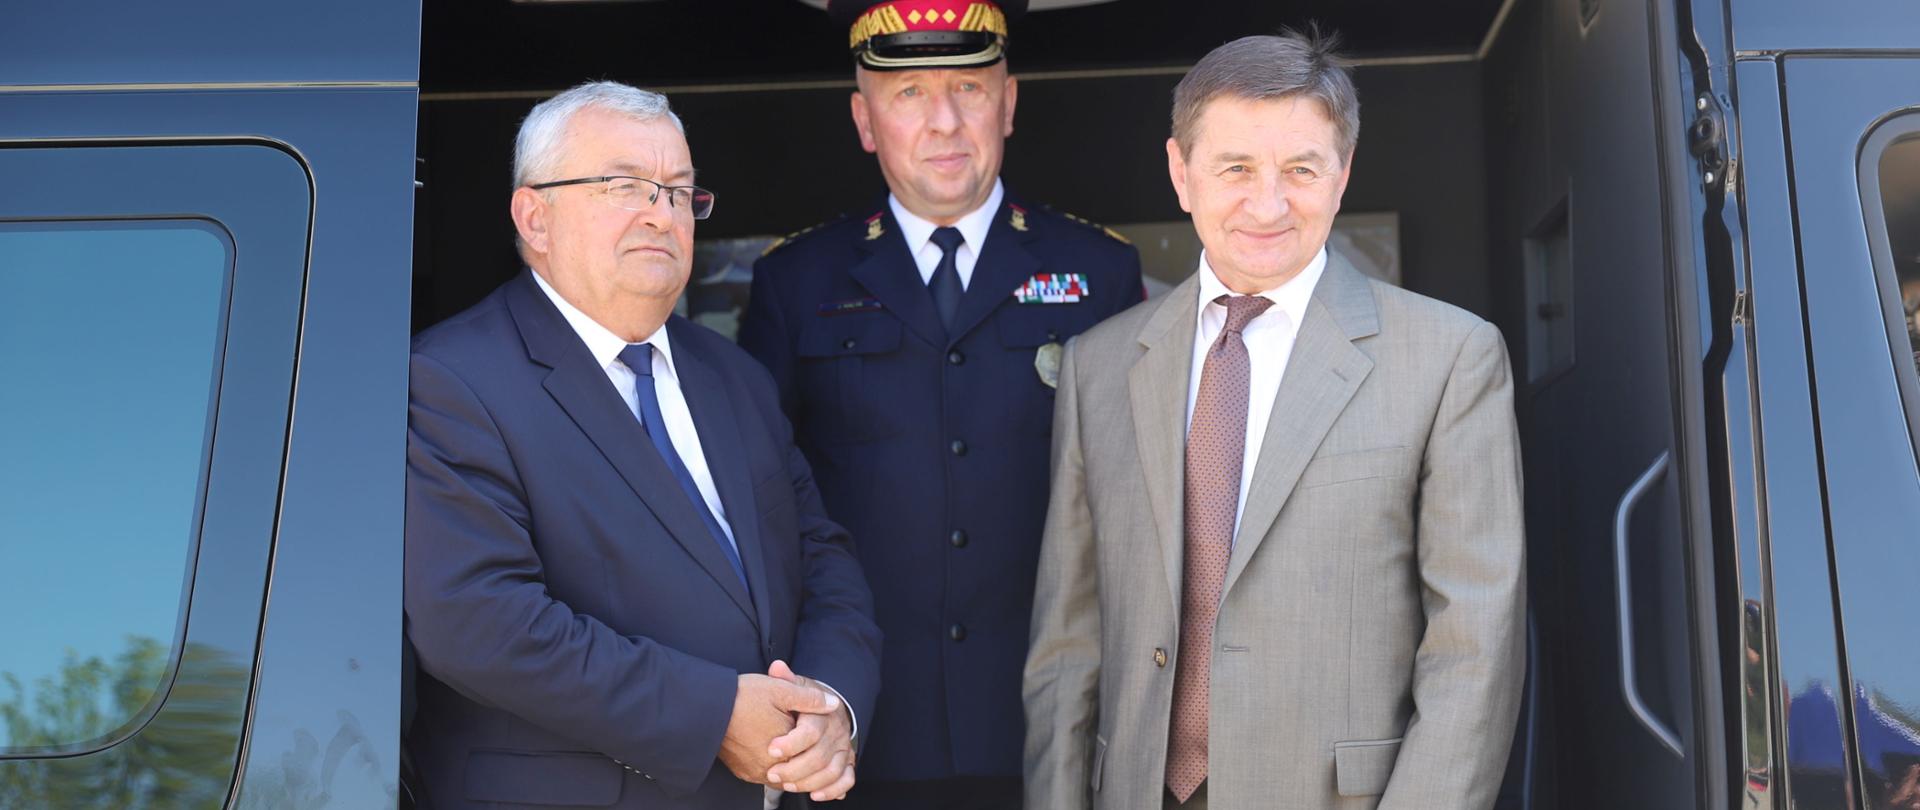 Od lewej: minister infrastruktury Andrzej Adamczyk, komendant główny Straży Ochrony Kolei dr Józef Hałyk, szef KPRM Marek Kuchciński